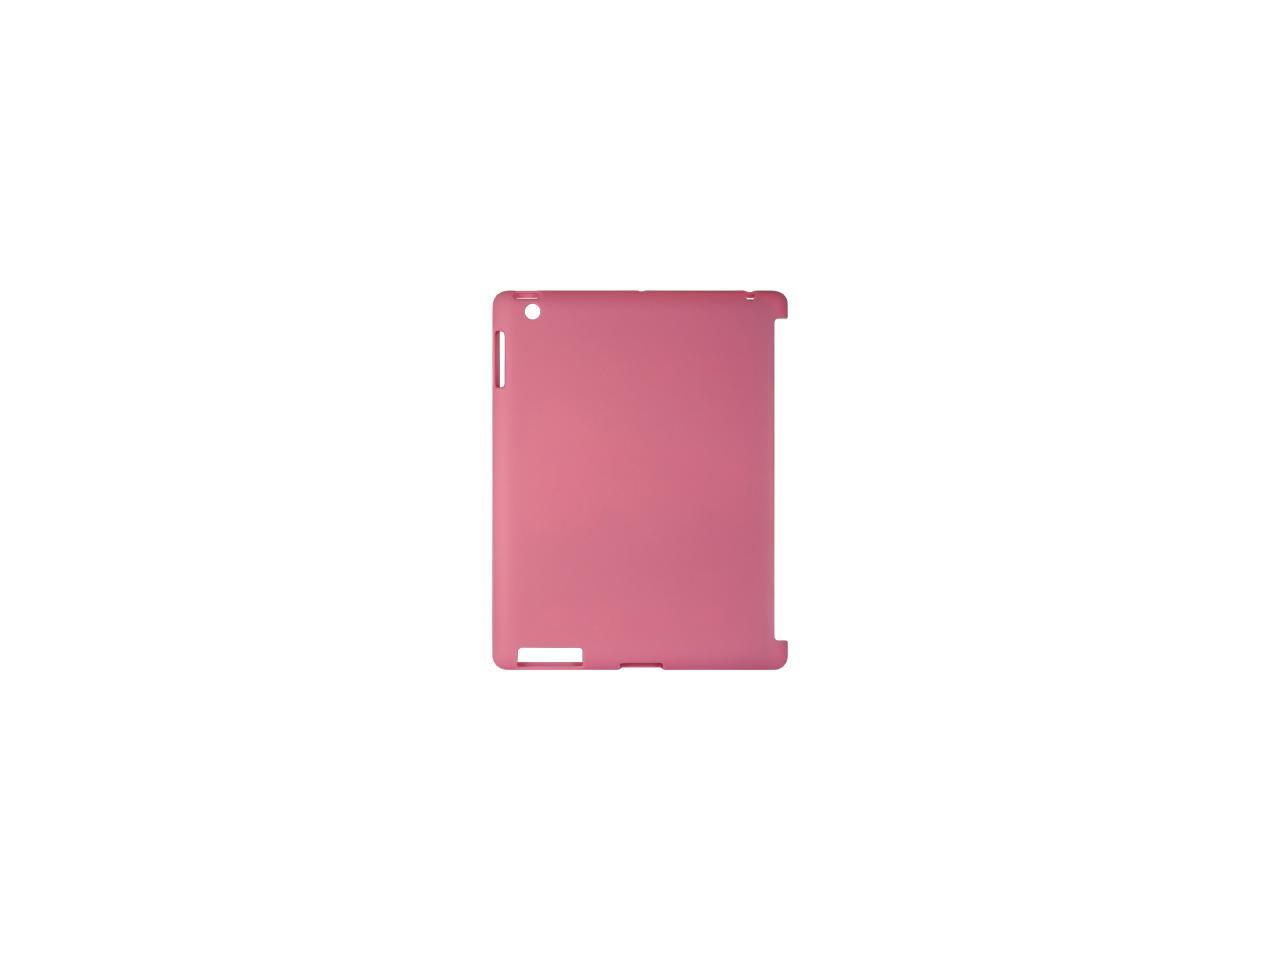 Apple iPad 3/The New iPad/iPad 2 Hot Pink Crystal Skin - Newegg.com